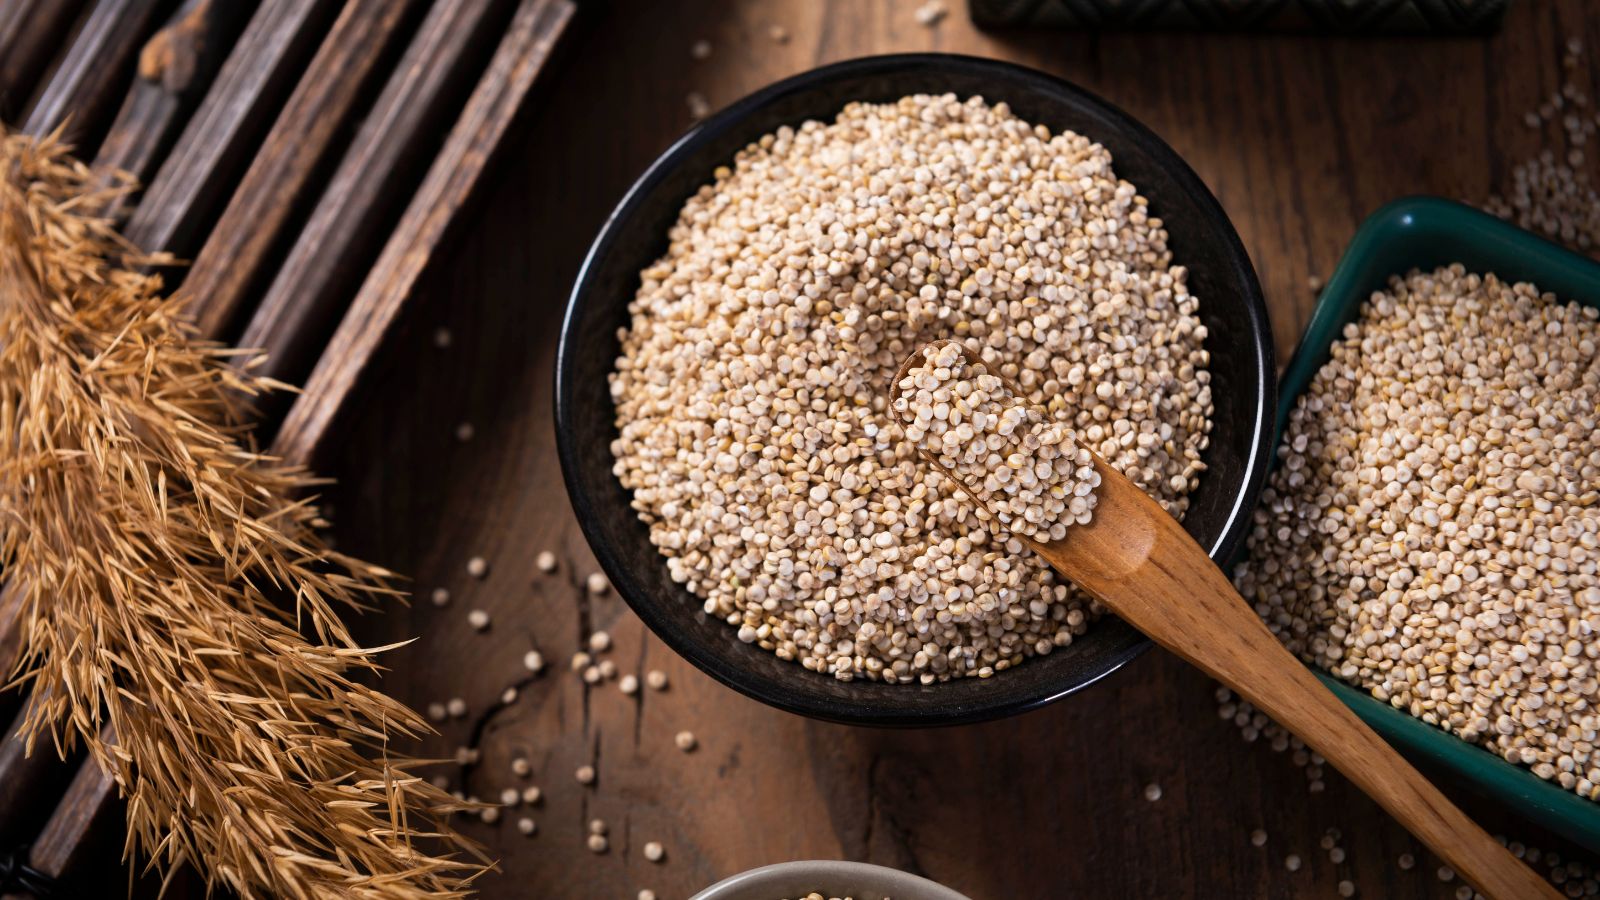 Hạt quinoa có chứa dưỡng chất cần thiết cho quá trình chuyển hóa năng lượng và sức khỏe xương.